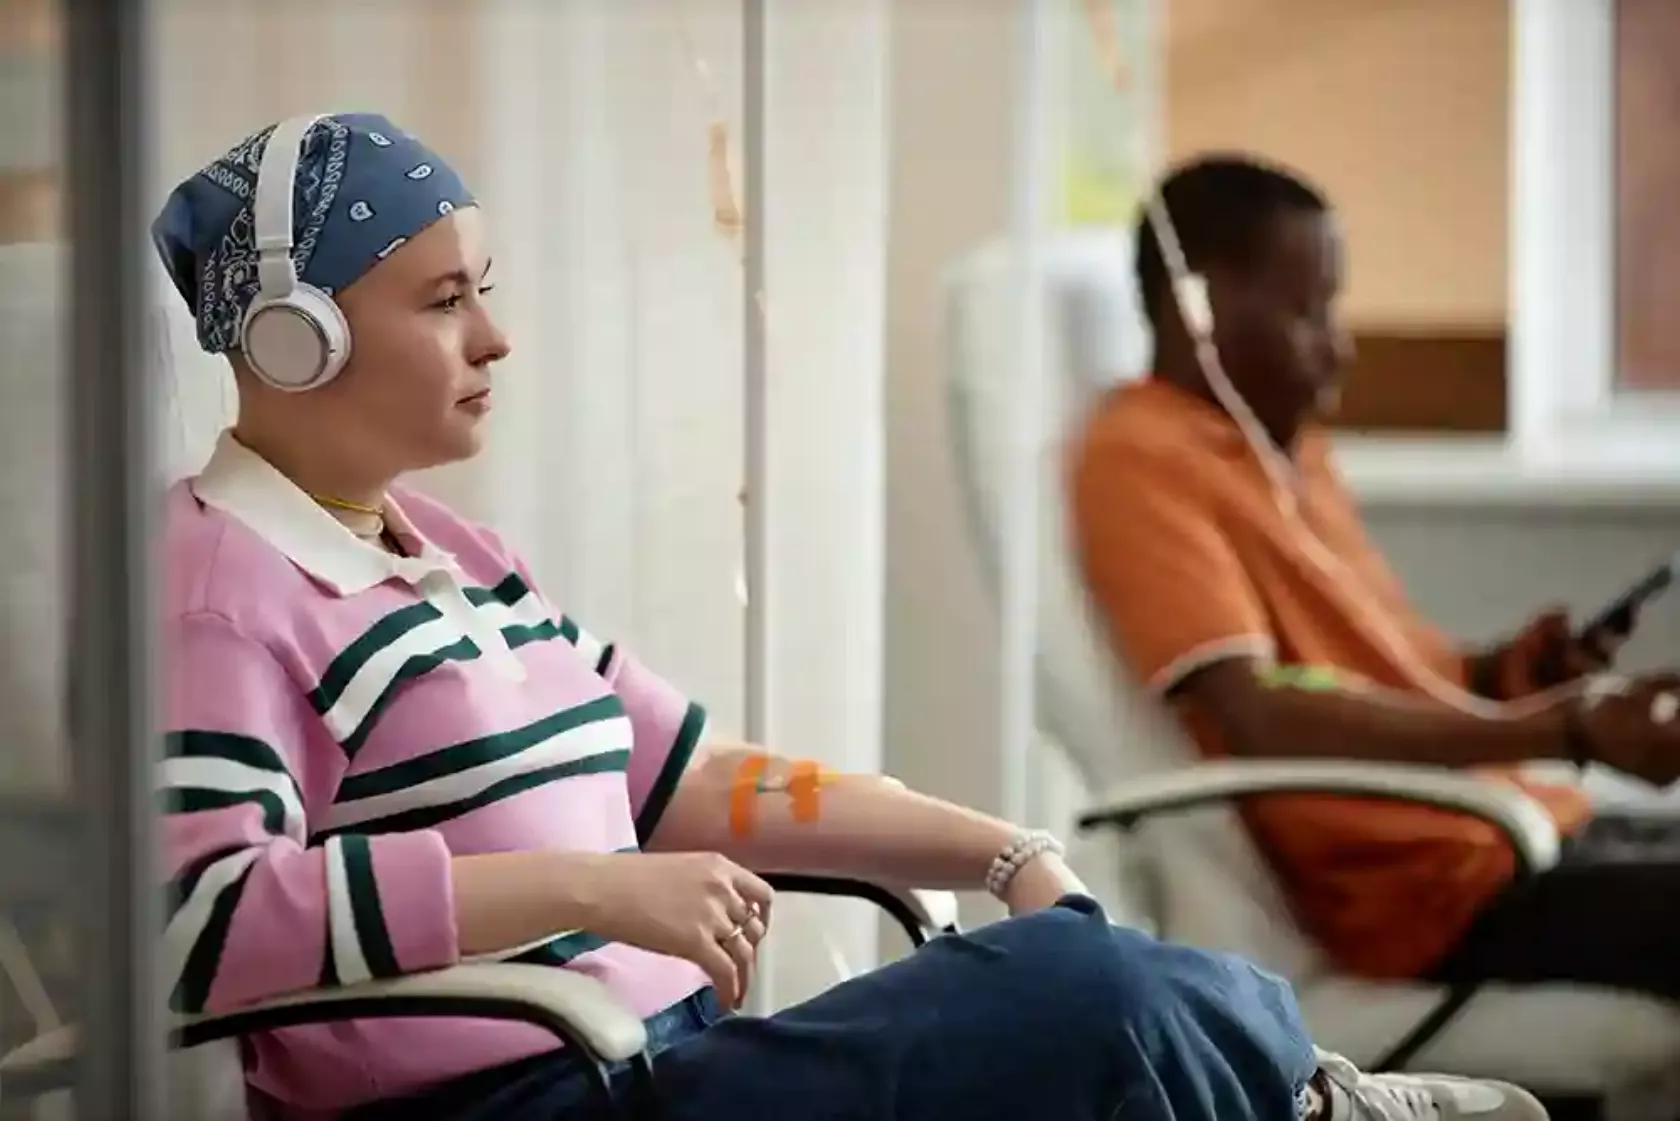 Eine Frau und ein Mann sitzen bei der ambulanten Chemotherapie-Infusion.